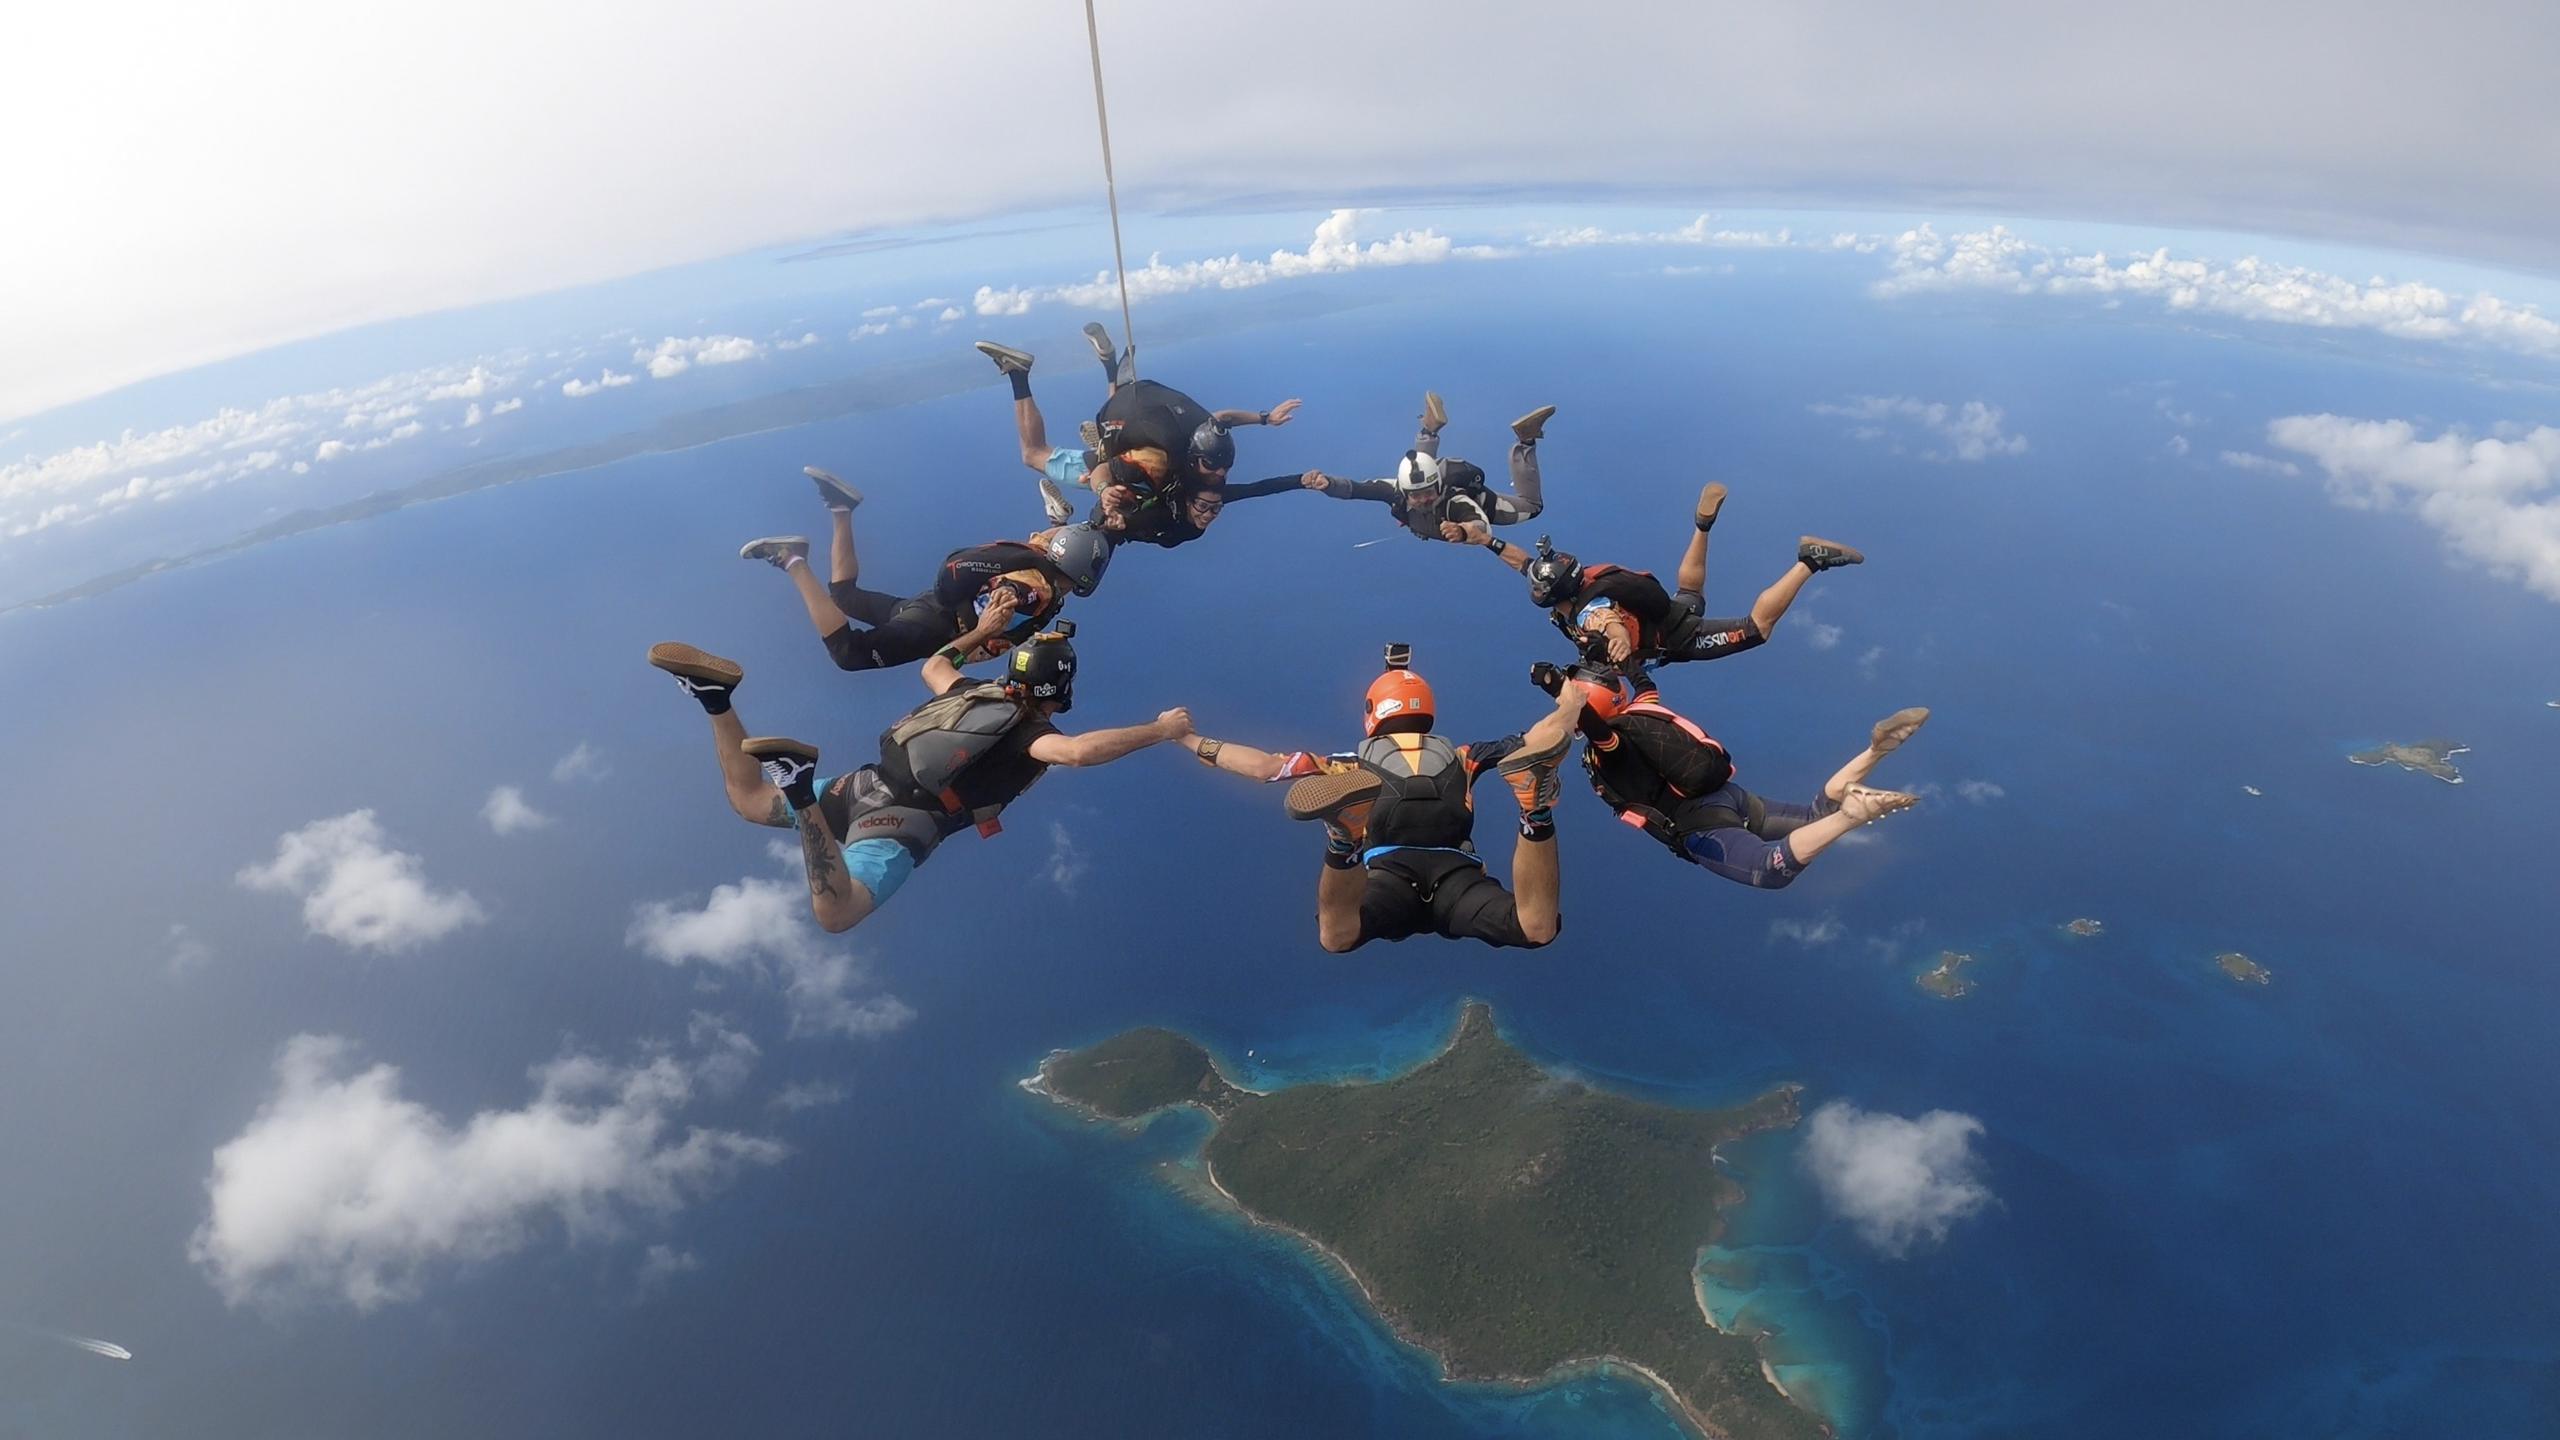 Skydive Puerto Rico ha guiado a más de 25,000 personas a cumplir el sueño de lanzarse en un paracaídas.